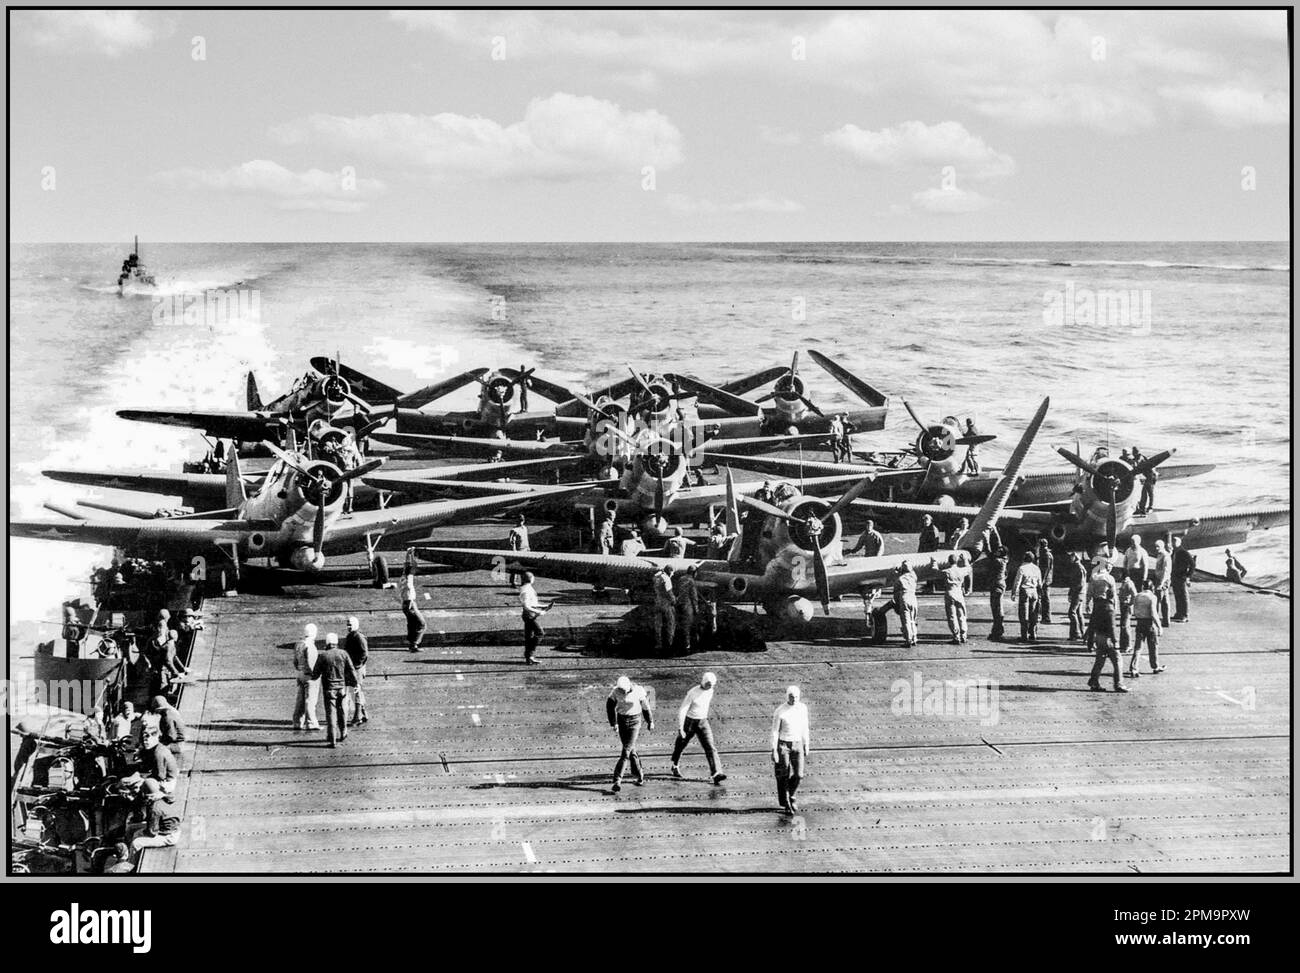 BATALLA DE MEDWAY WW2 Los bombarderos Douglas-TBD-1-torpedos desplegaron sus alas para despegar del portaaviones USS Enterprise durante la Batalla de Midway, el 4 de junio de 1942 Foto de stock